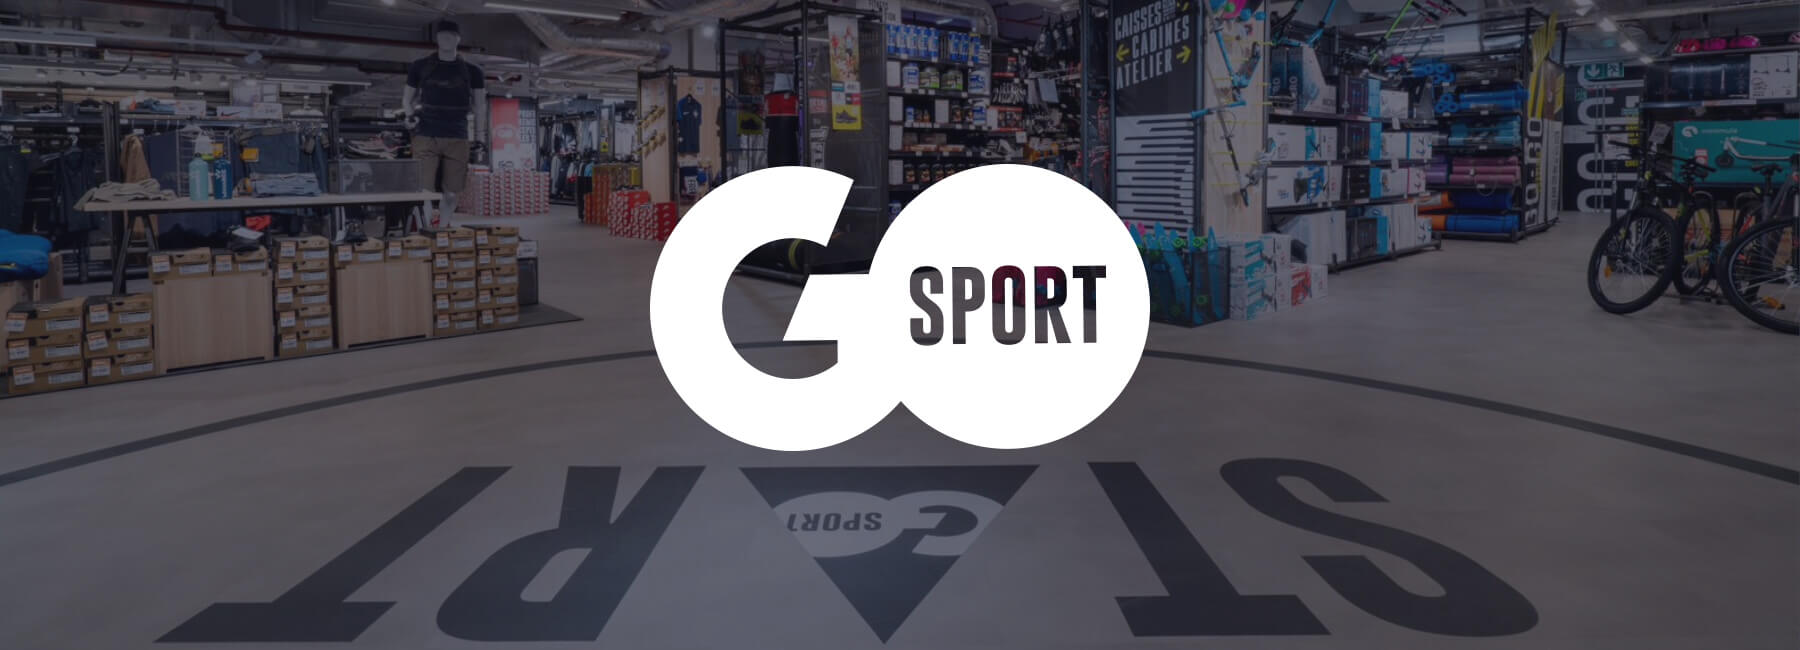 GO Sport optimise la navigation sur son site Internet grâce à Mopinion